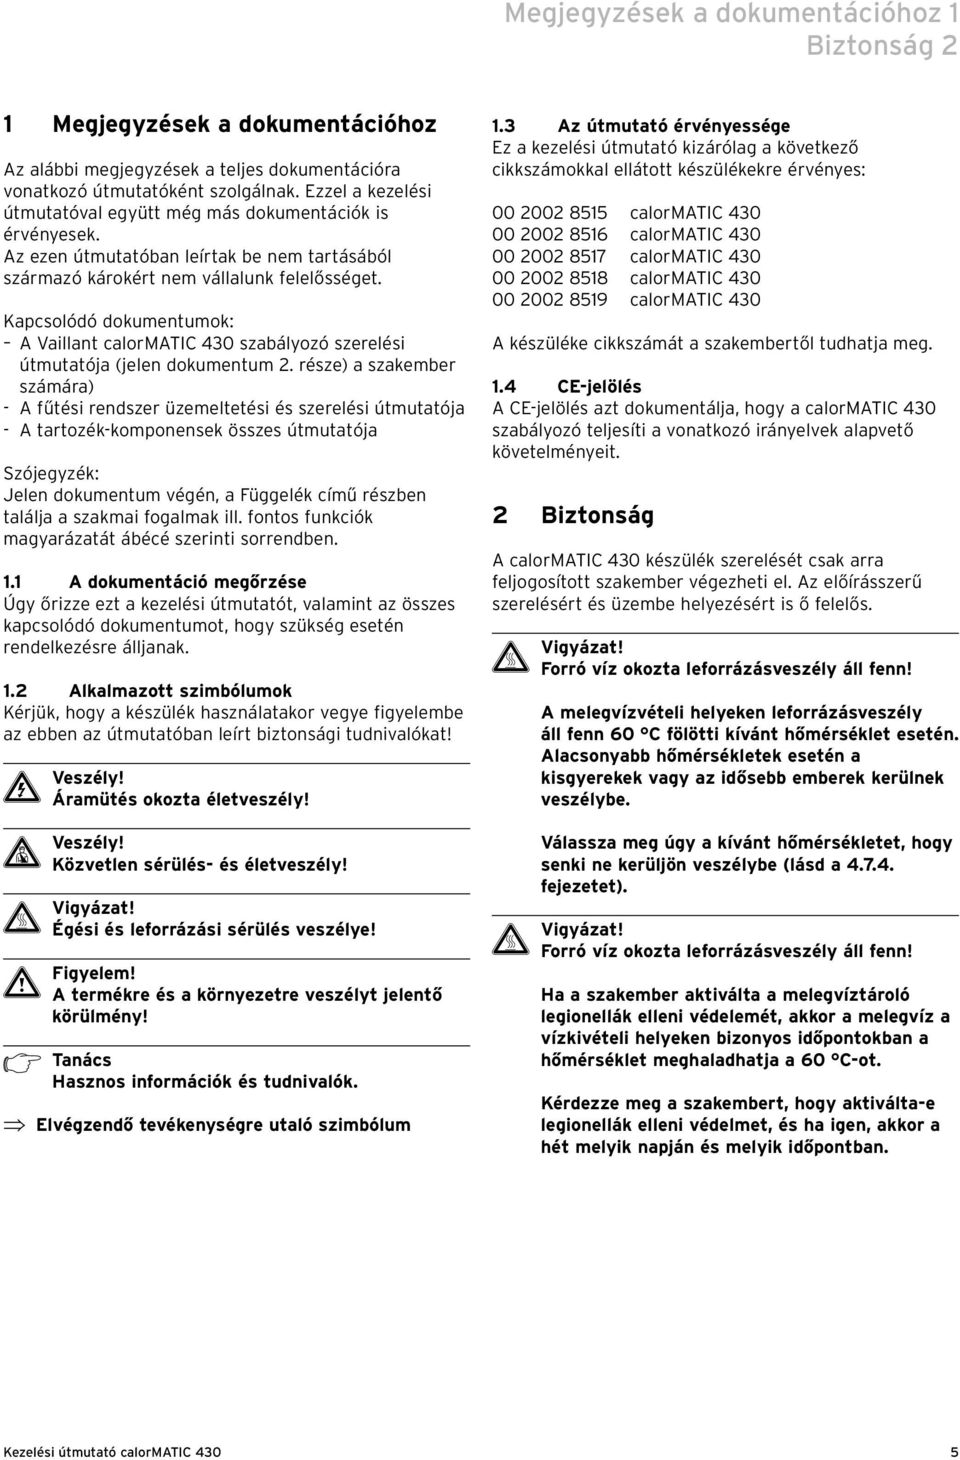 Kapcsolódó dokumentumok: A Vaillant calormatic 430 szabályozó szerelési útmutatója (jelen dokumentum 2.